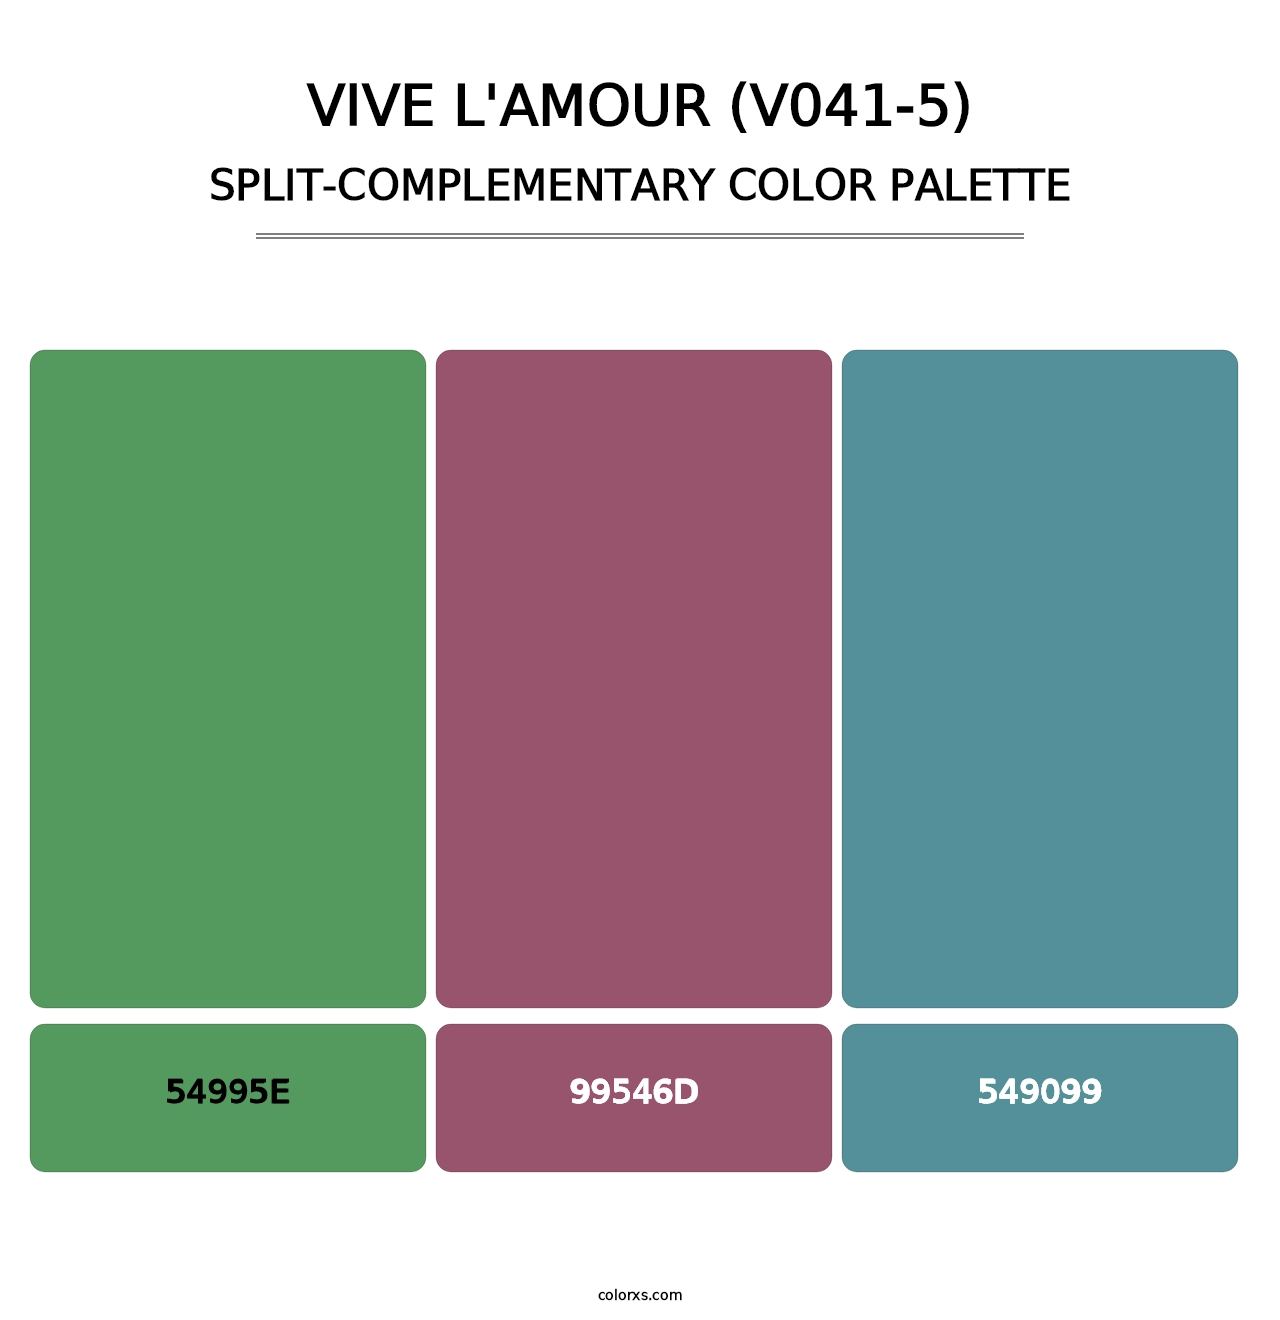 Vive l'amour (V041-5) - Split-Complementary Color Palette